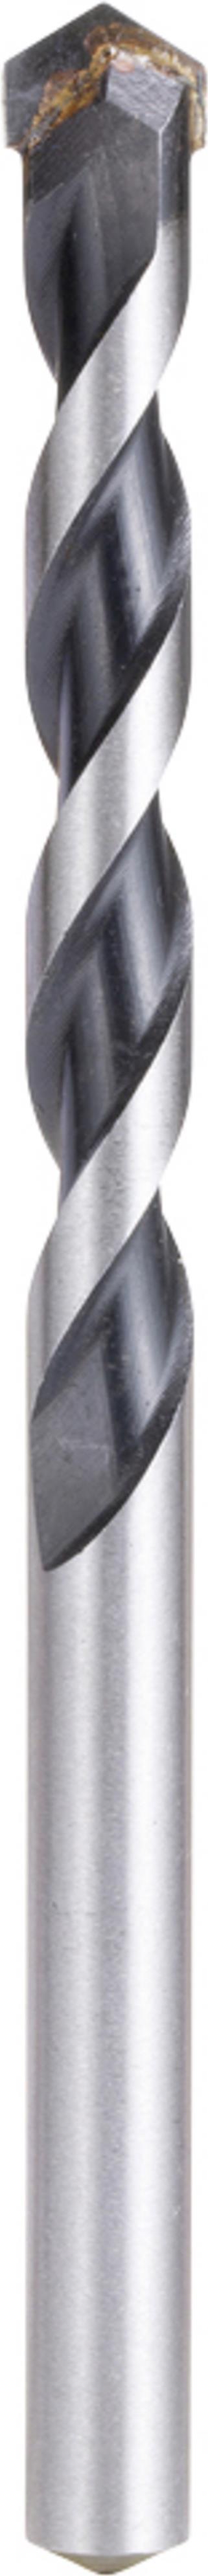 Makita E-11075 Hartmetall Mehrzweckbohrer 1 Stück 12 mm Gesamtlänge 150 mm Schnellspannbohrfutter 1 St. (E-11075)